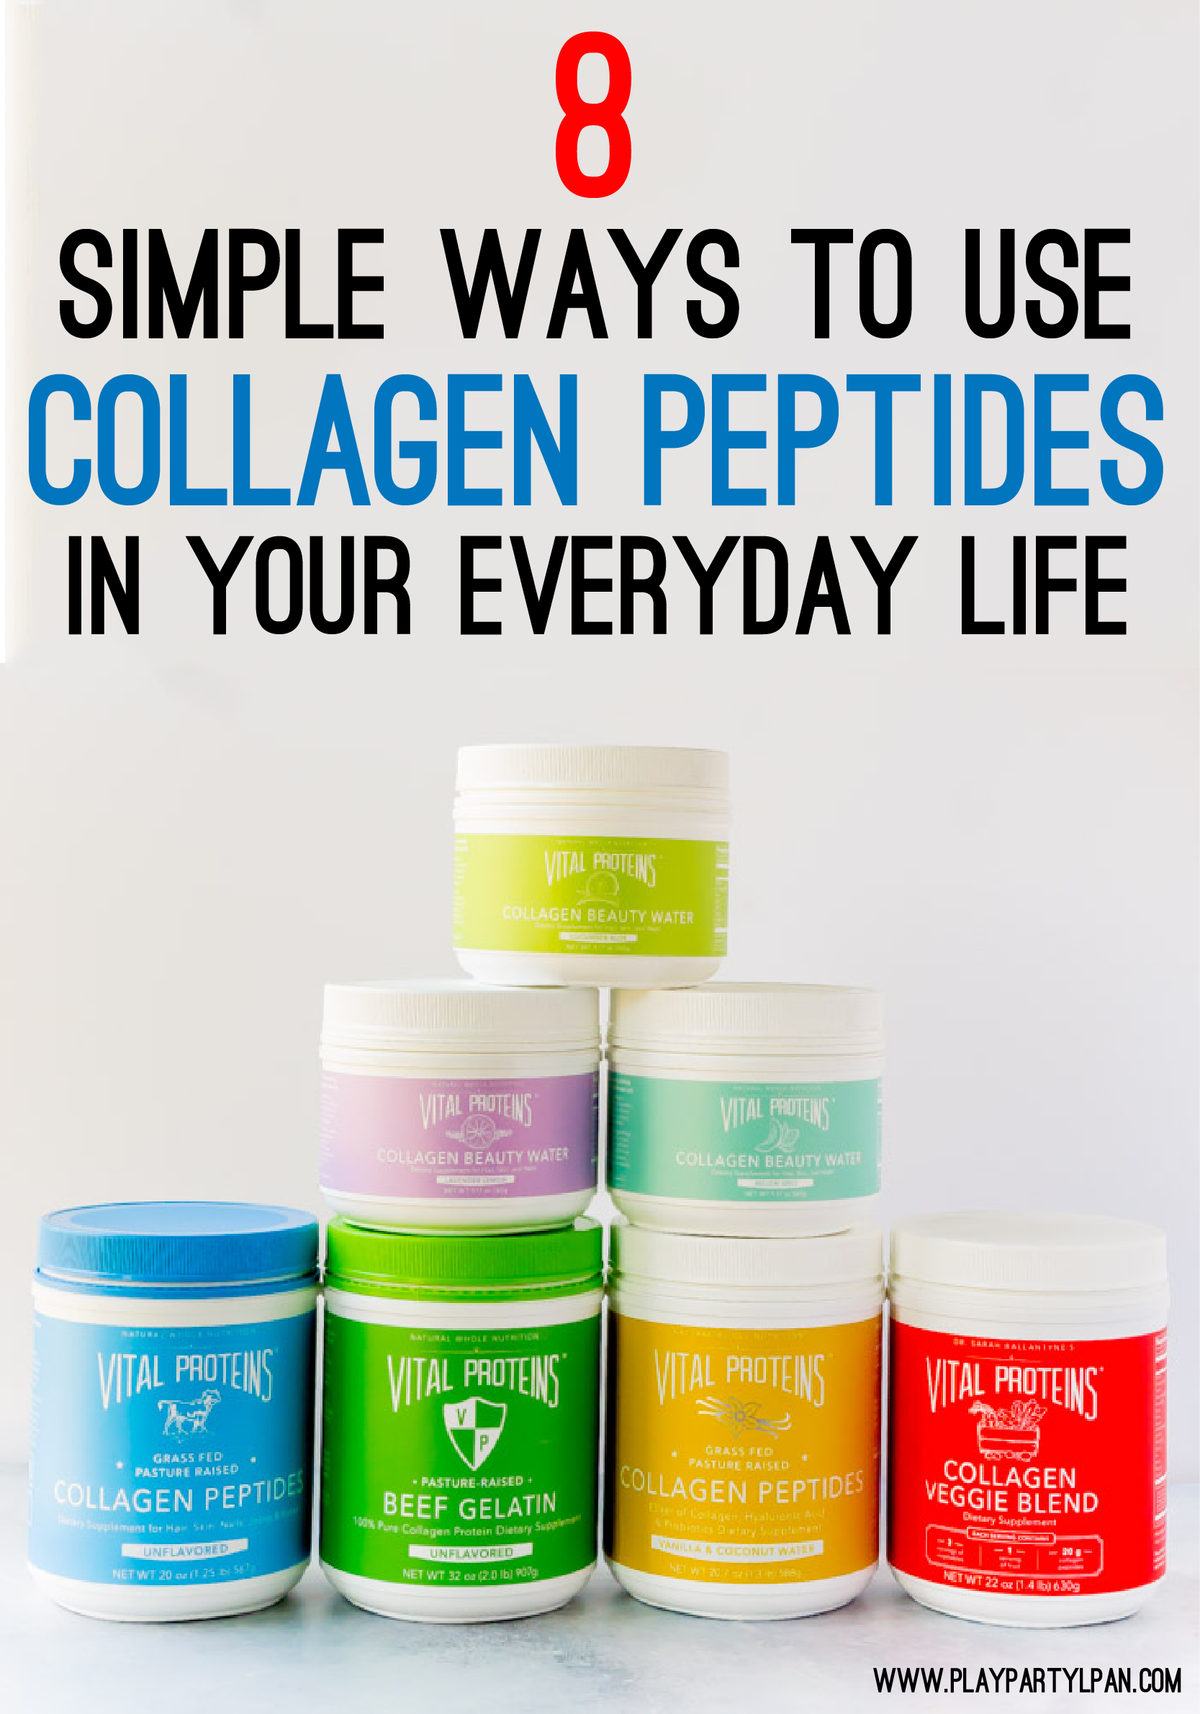 Świetne sposoby na dodanie peptydów kolagenowych Vital Proteins do codziennego życia - od zdrowych koktajli po kulki proteinowe!